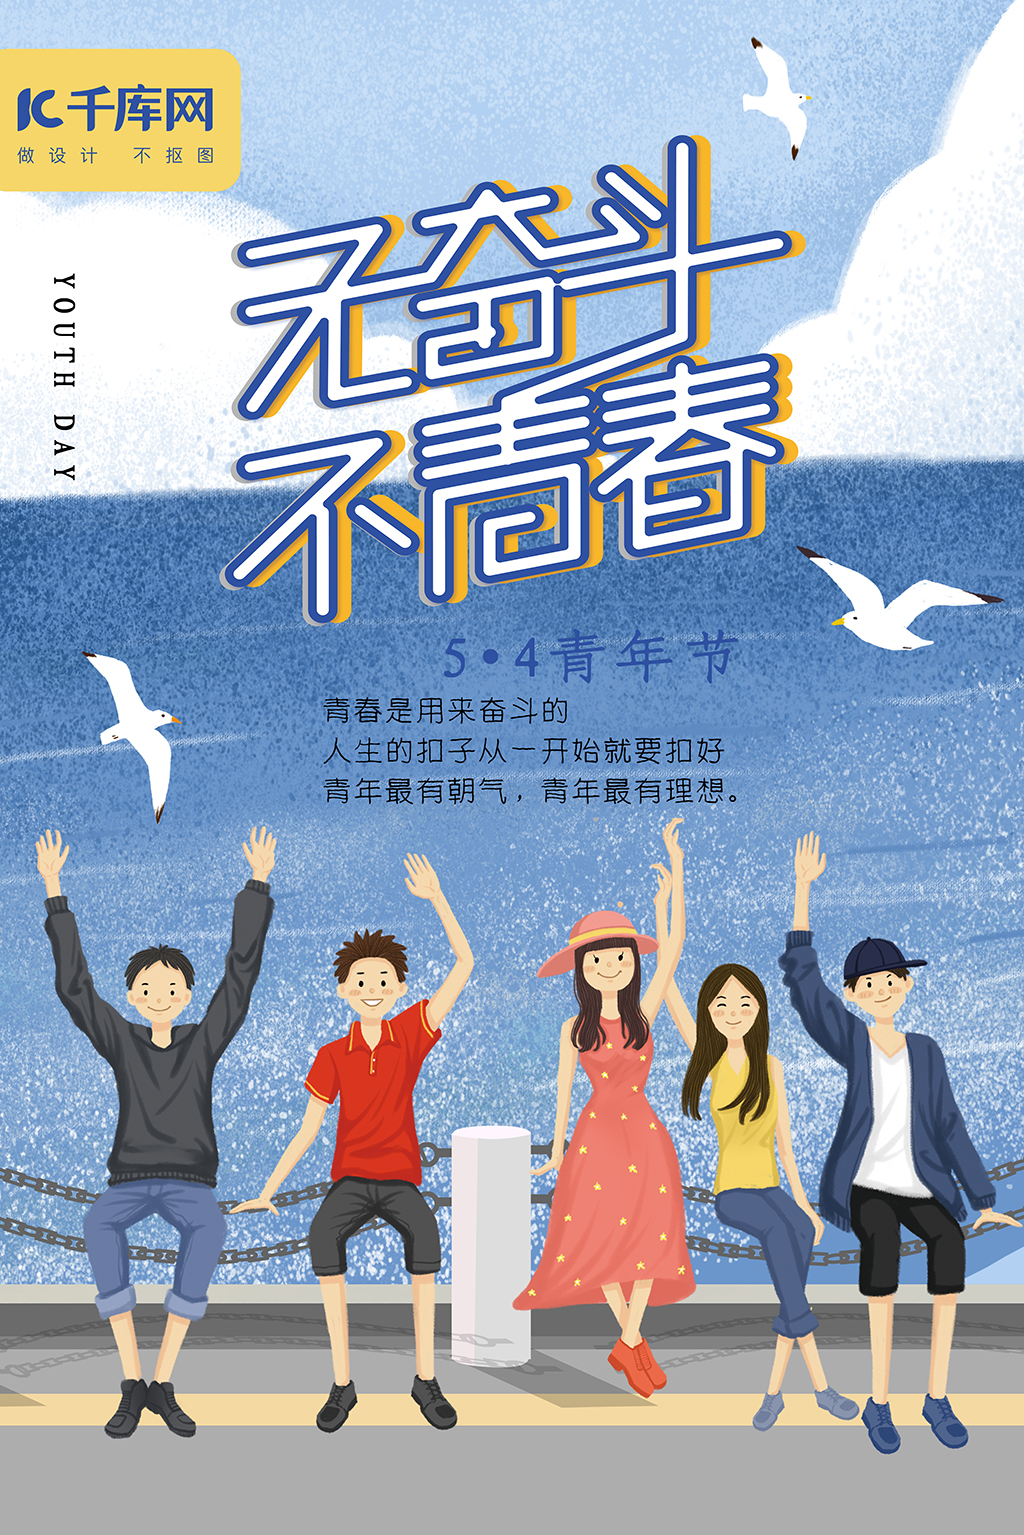 54青年节蓝色海鸥青春放飞梦想海报图片